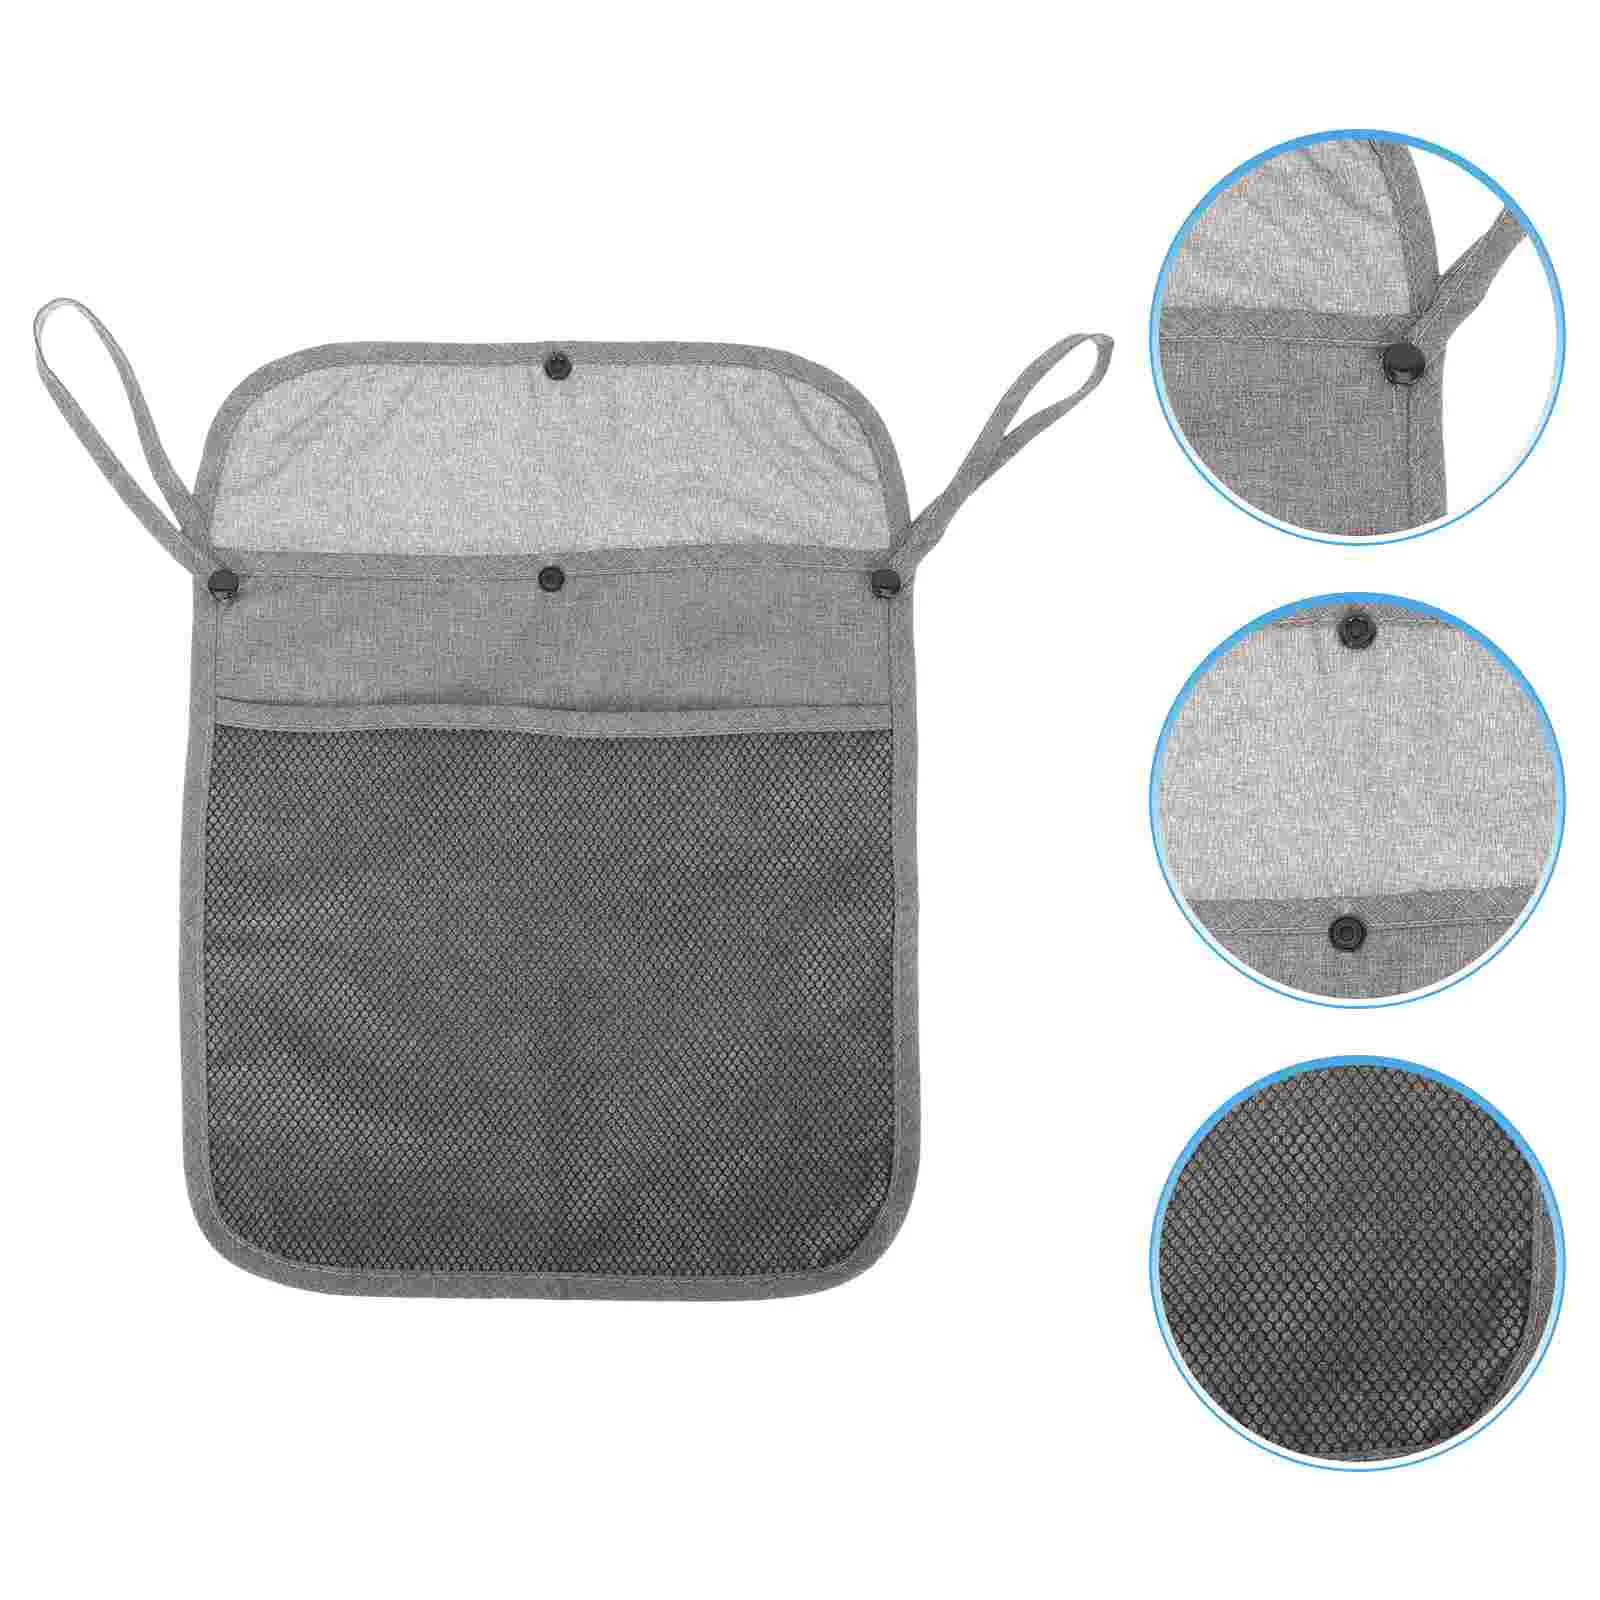 

Органайзер для детской коляски, подвесная сумка на колесиках, для путешествий, хранения закусок, льняной мешок для младенцев